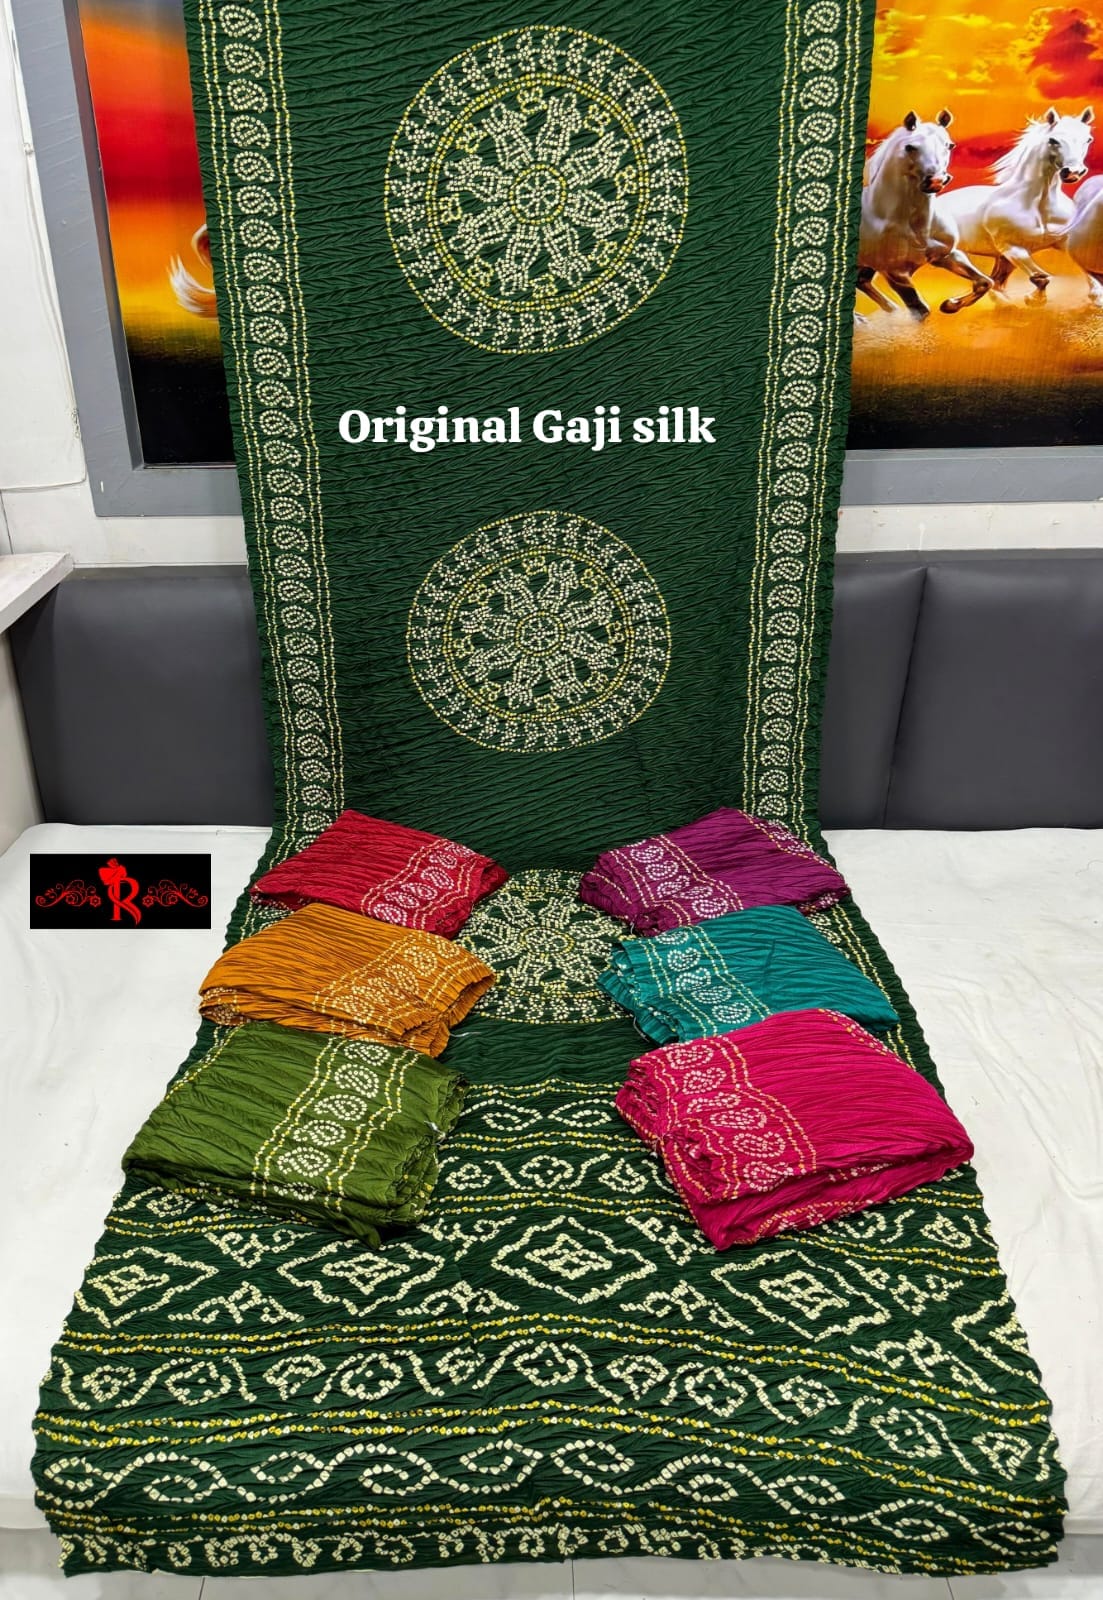 Original moss gajji silk saree